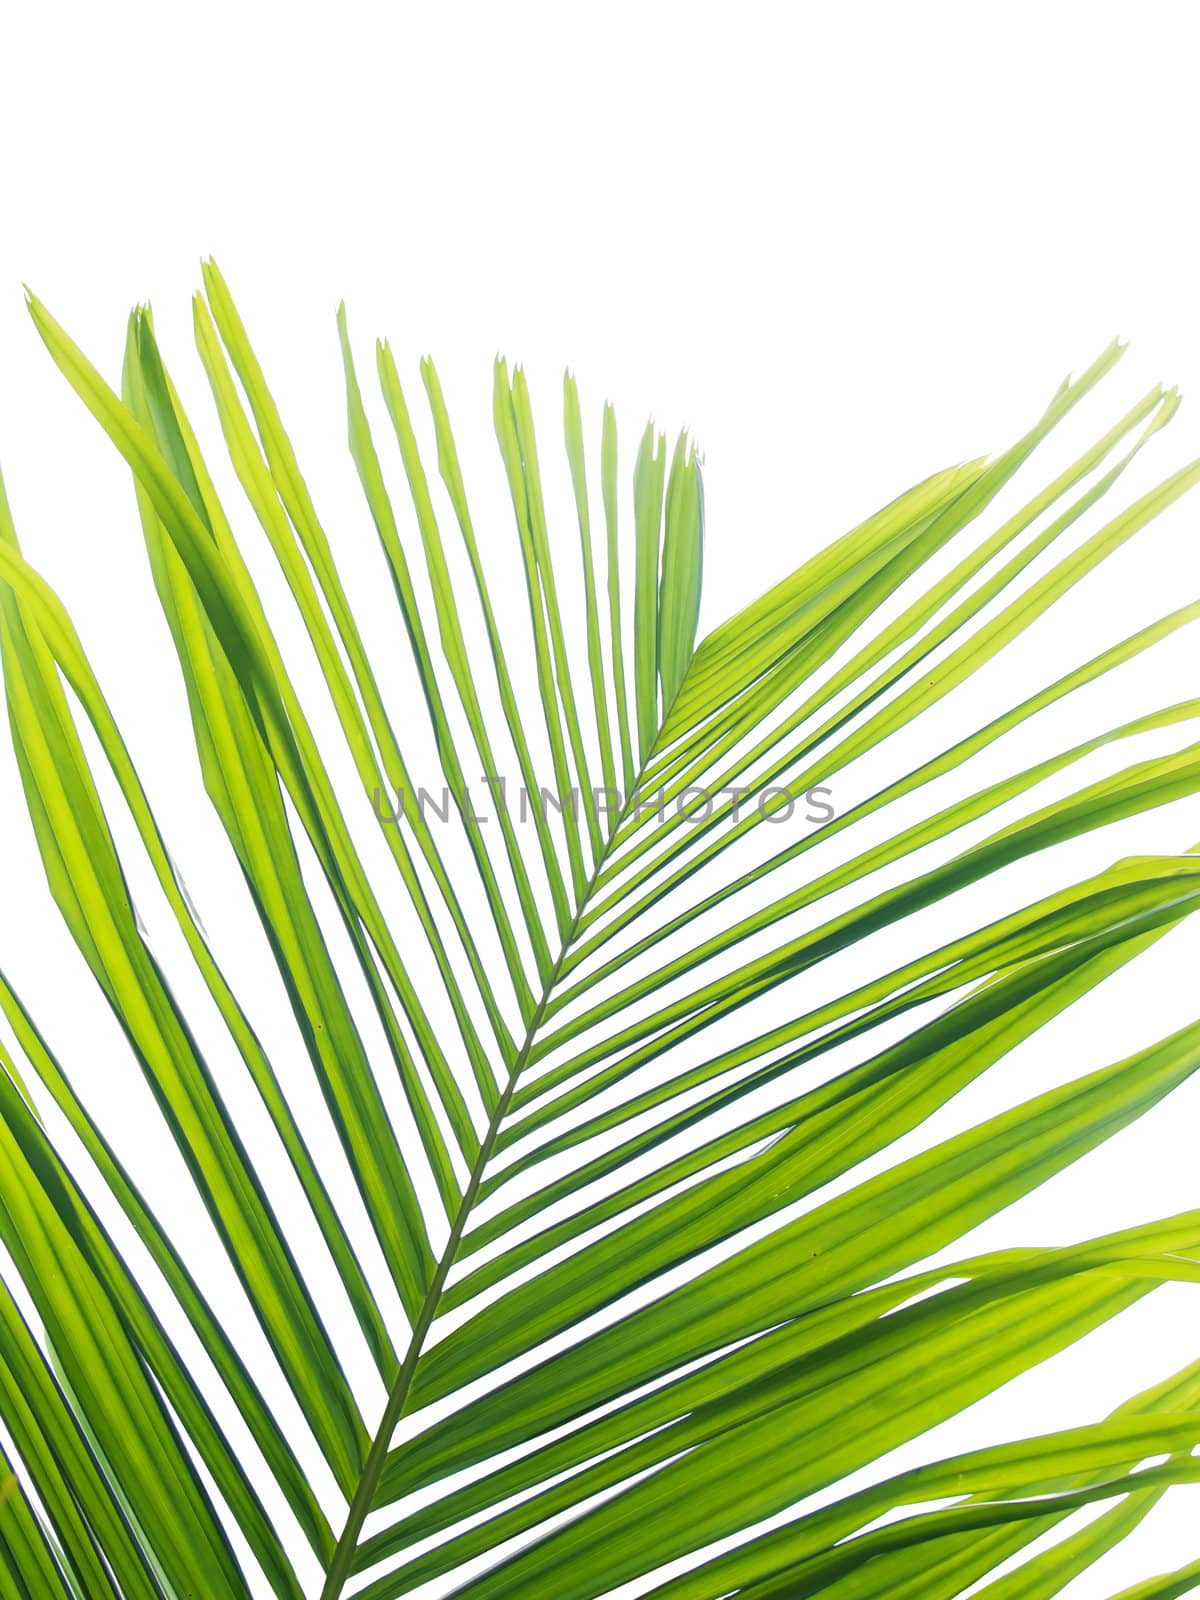 Beautiful palm leaf by Exsodus